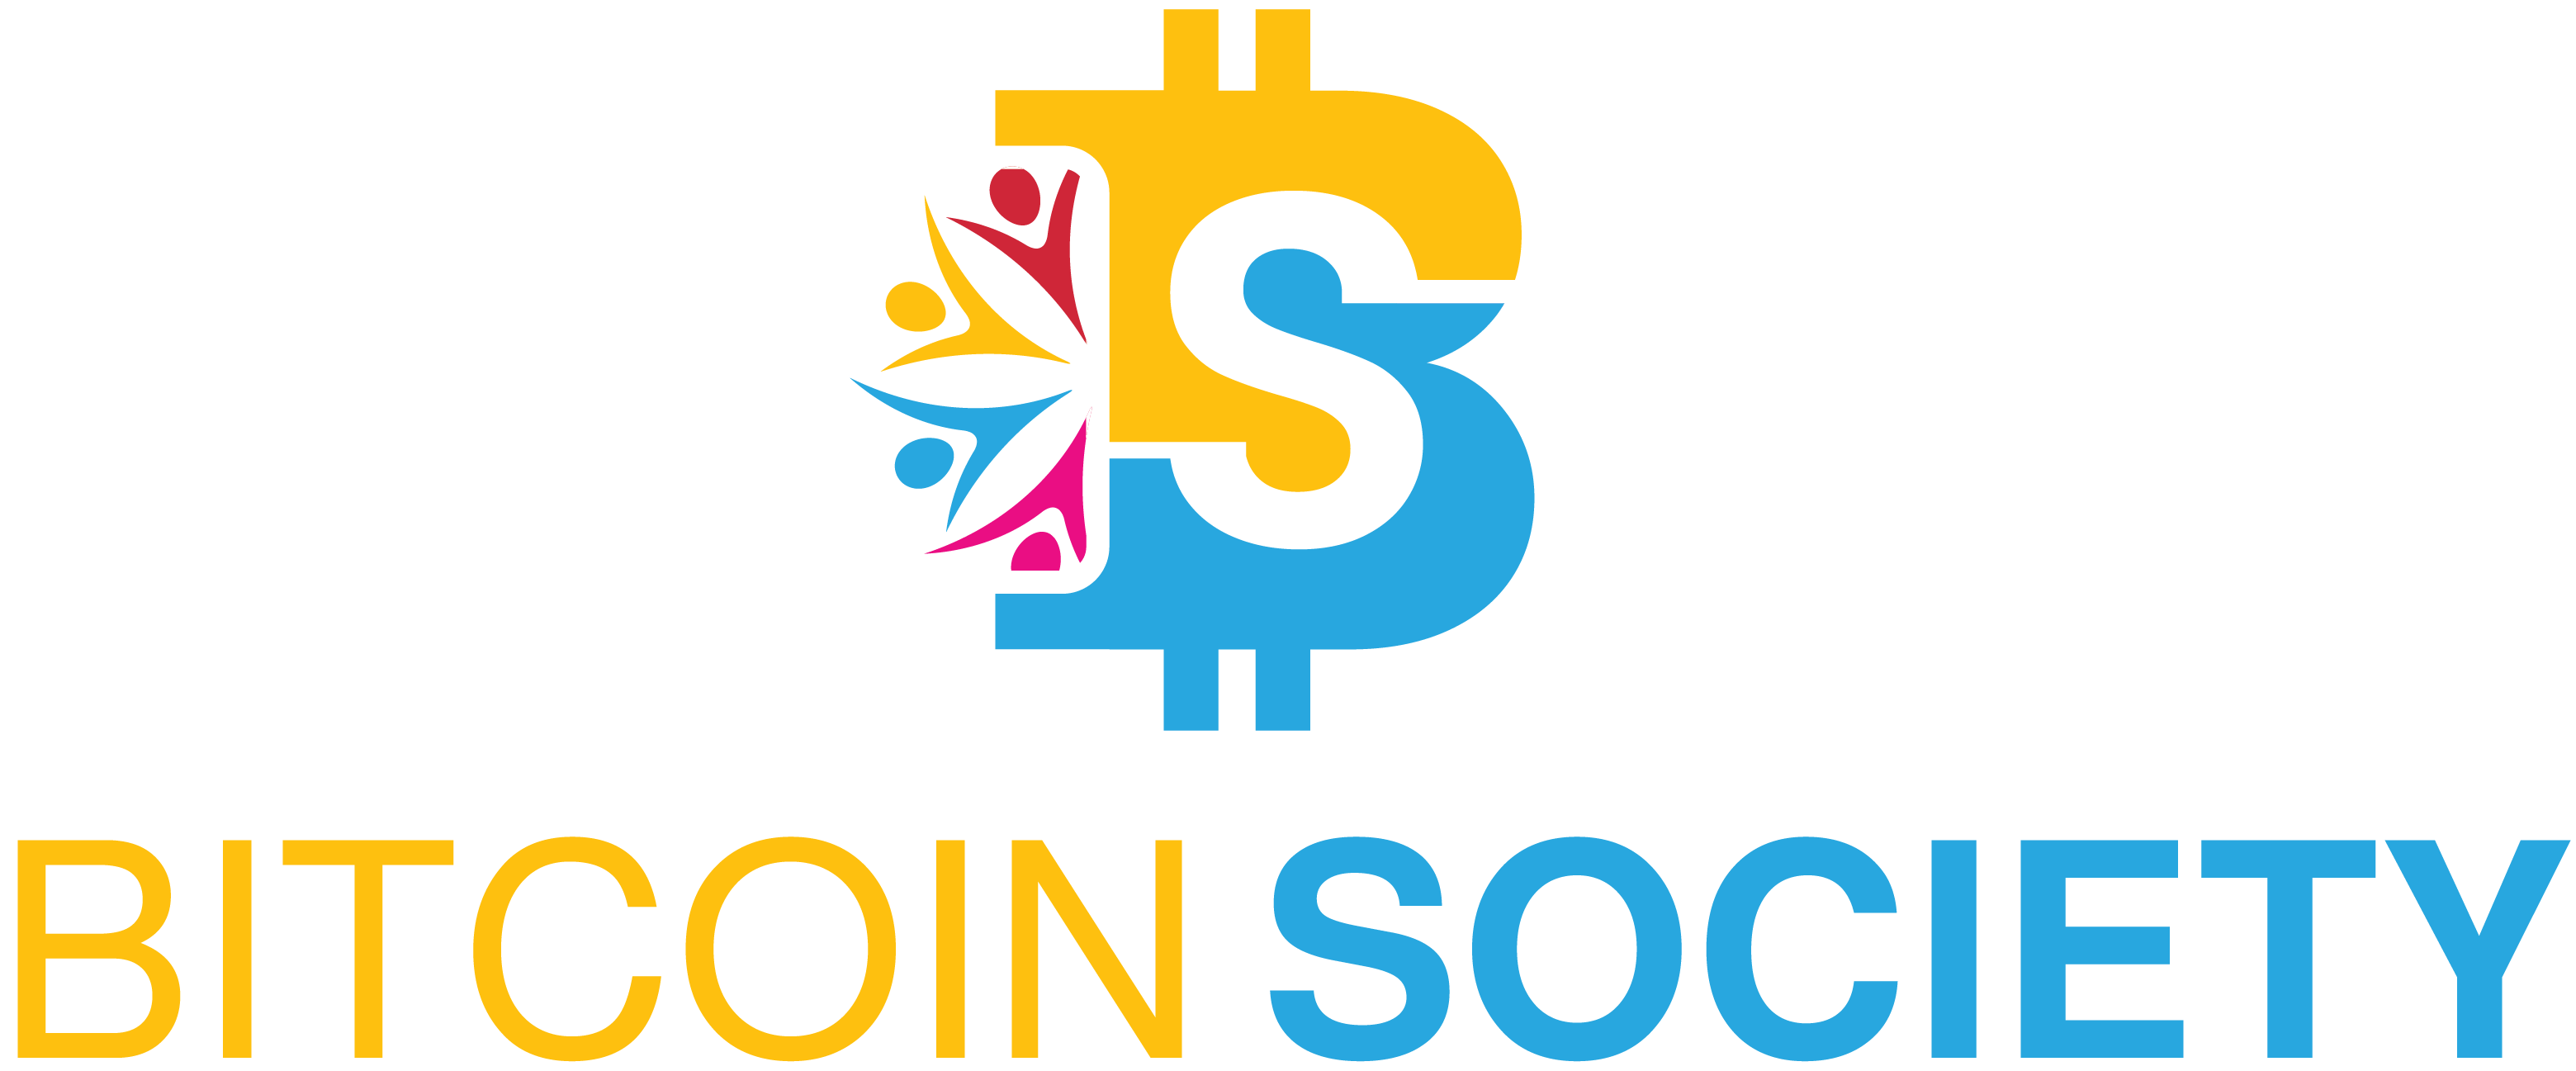 Bitcoin Society - Hubungi kami